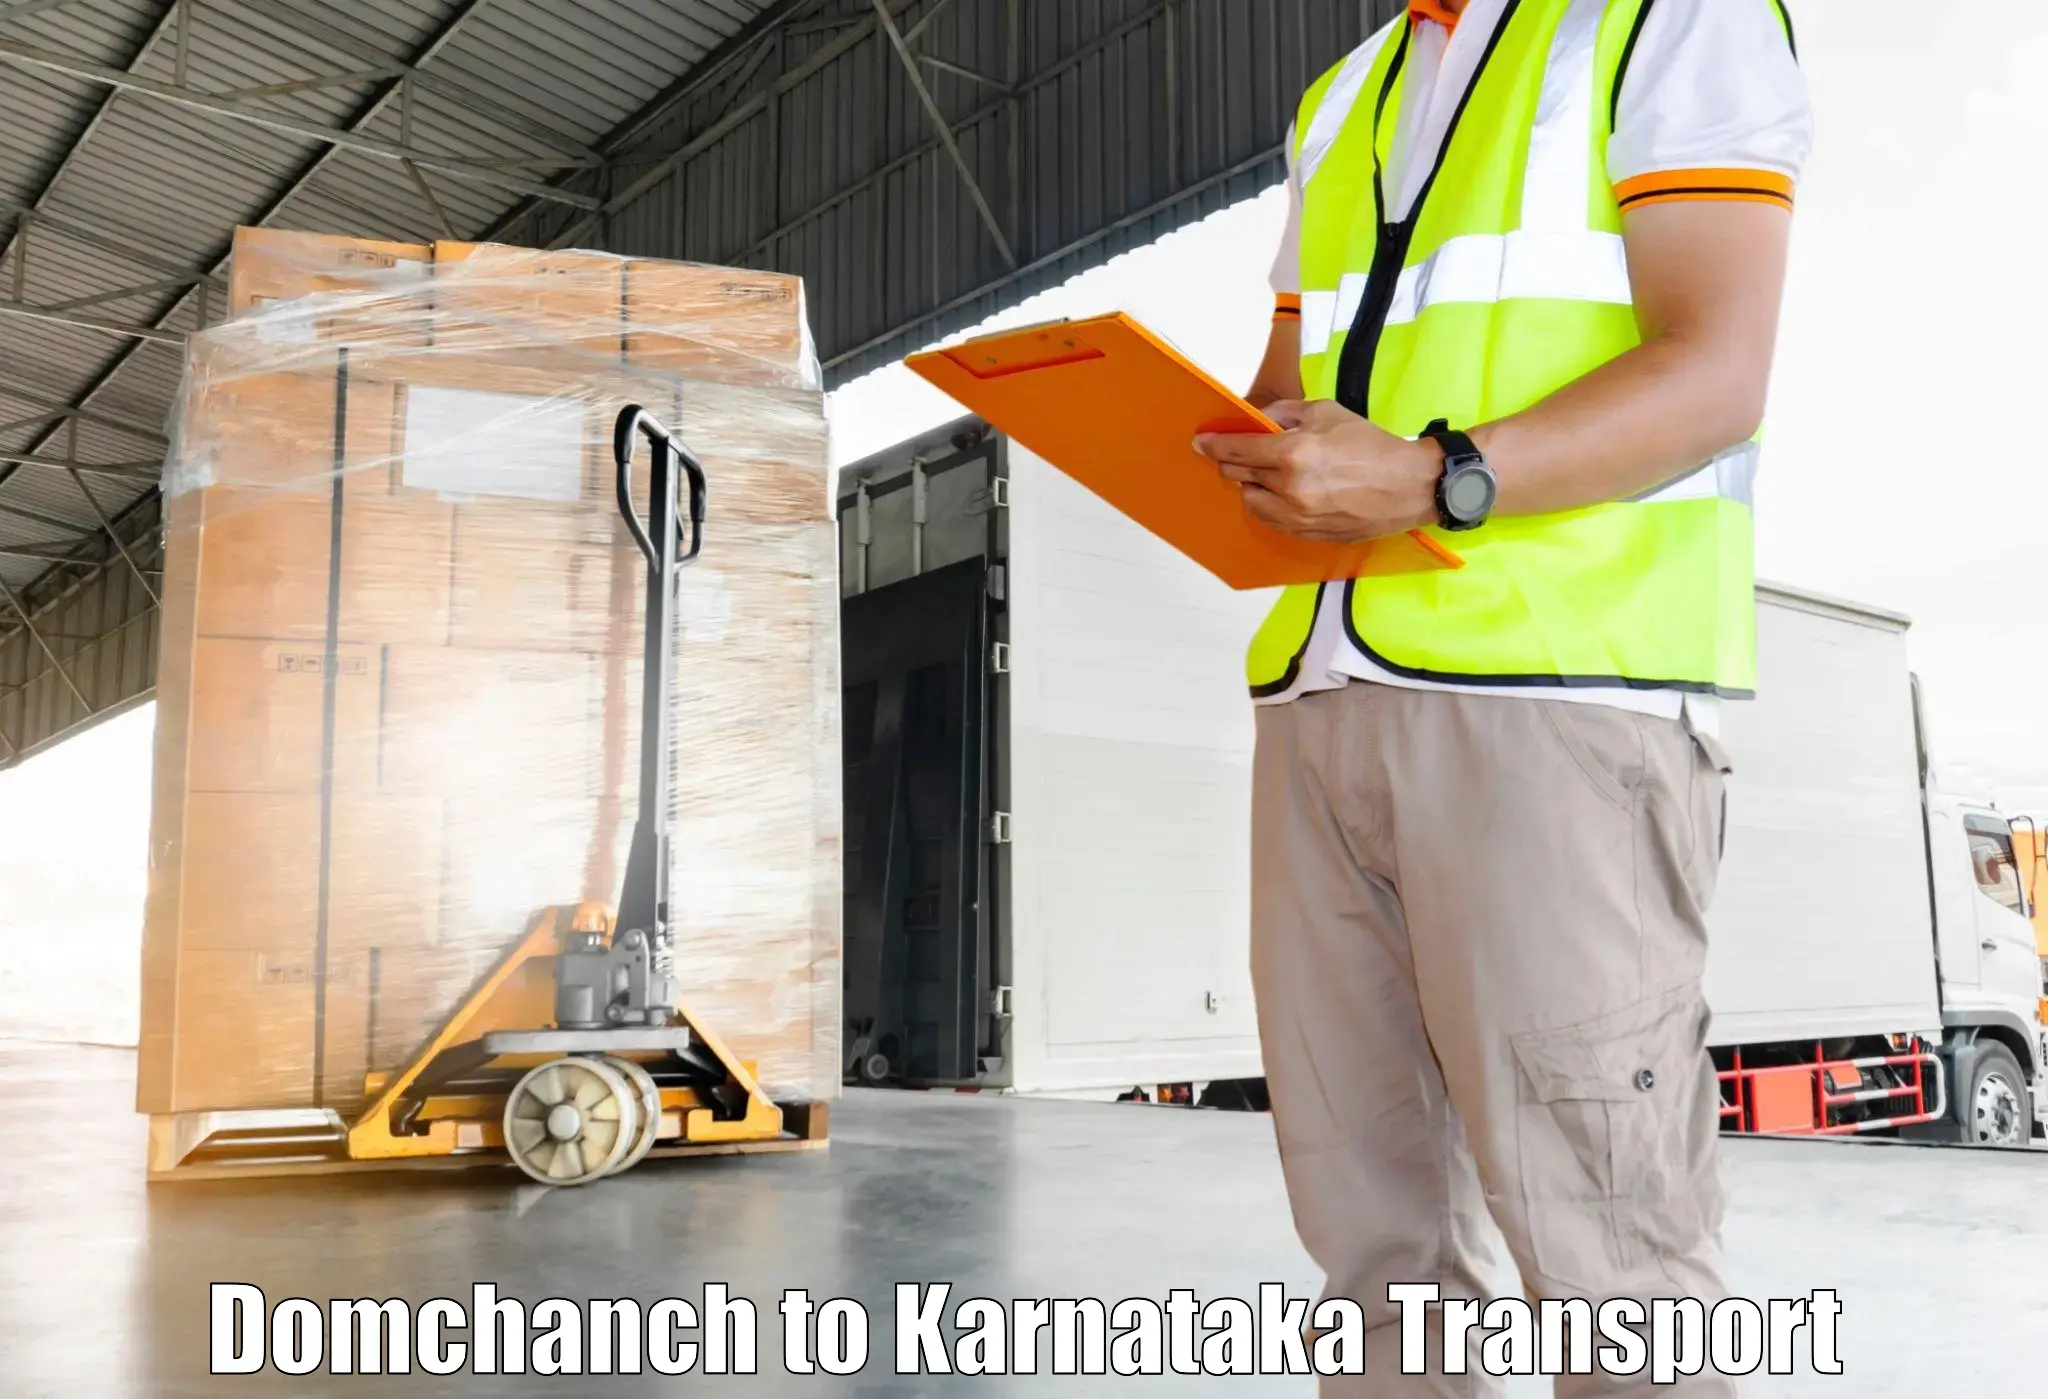 International cargo transportation services Domchanch to Ramdurg